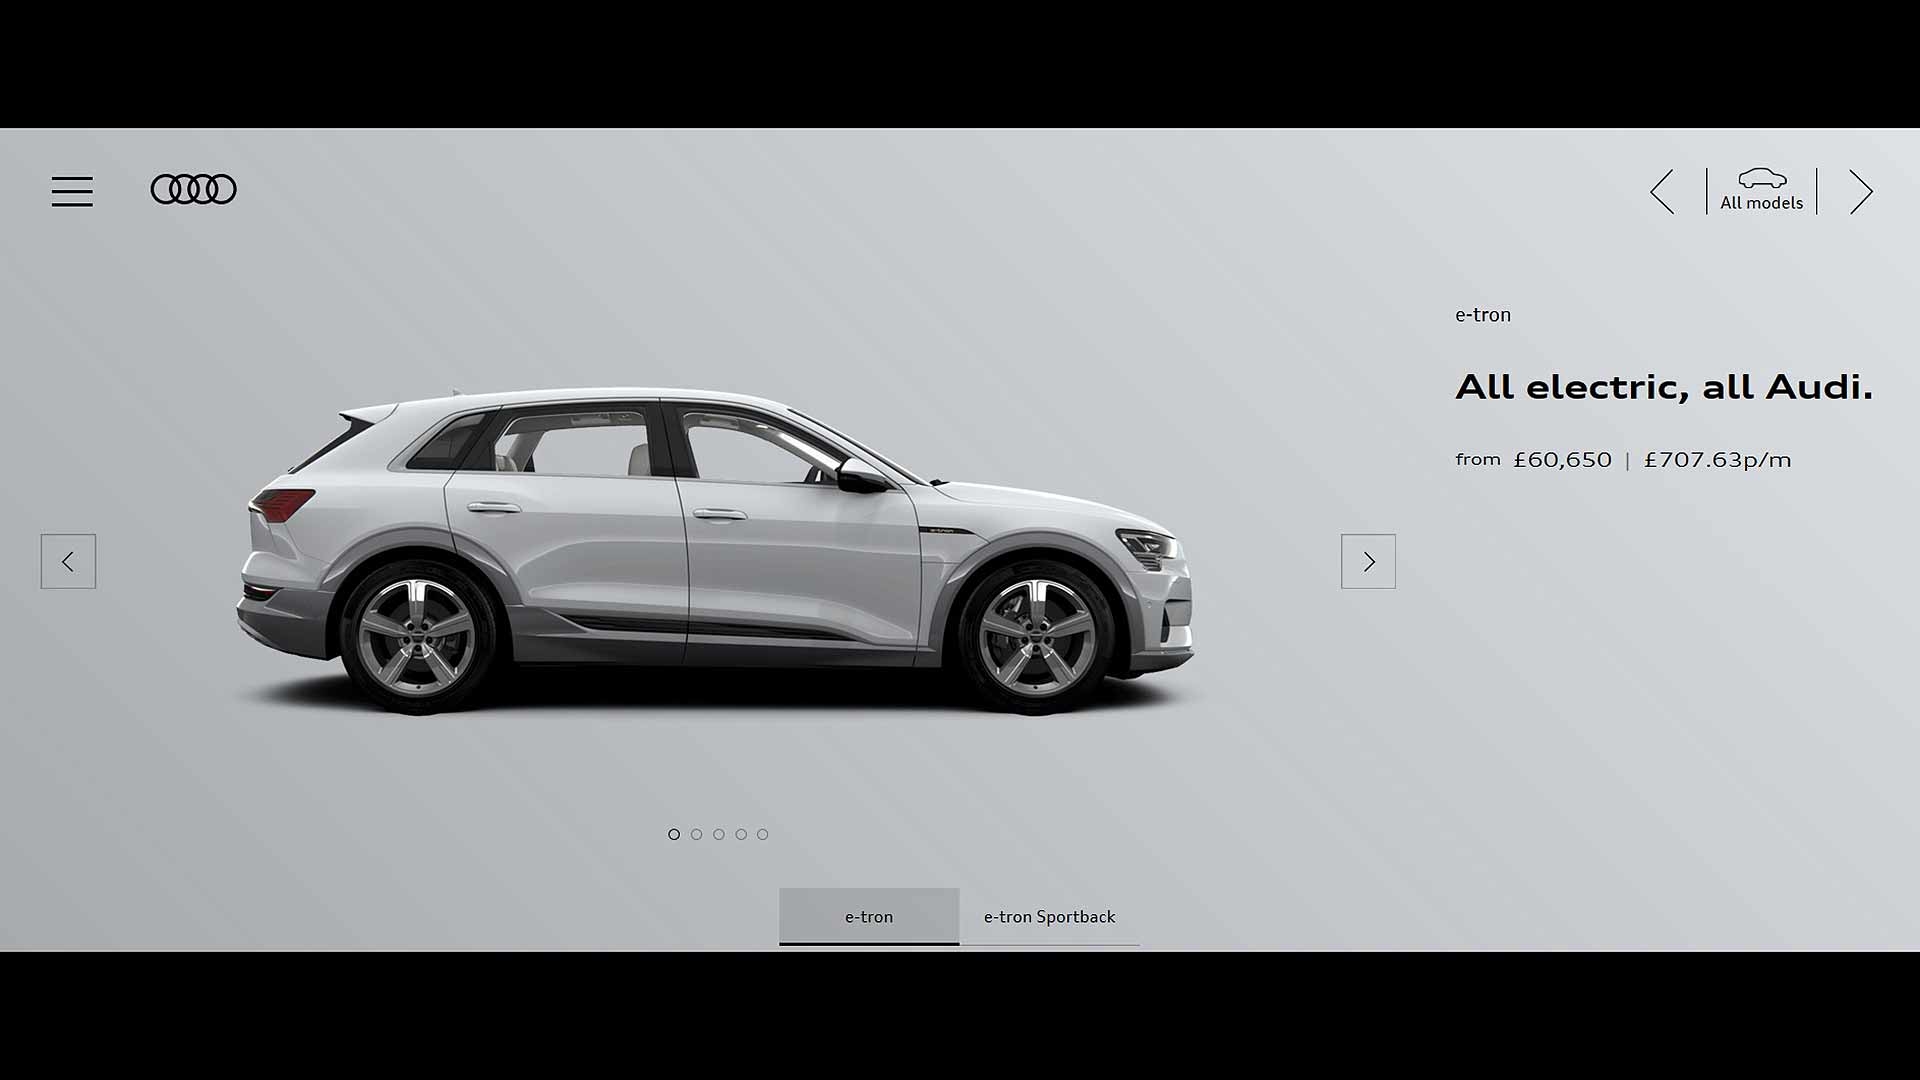 Audi e-tron website